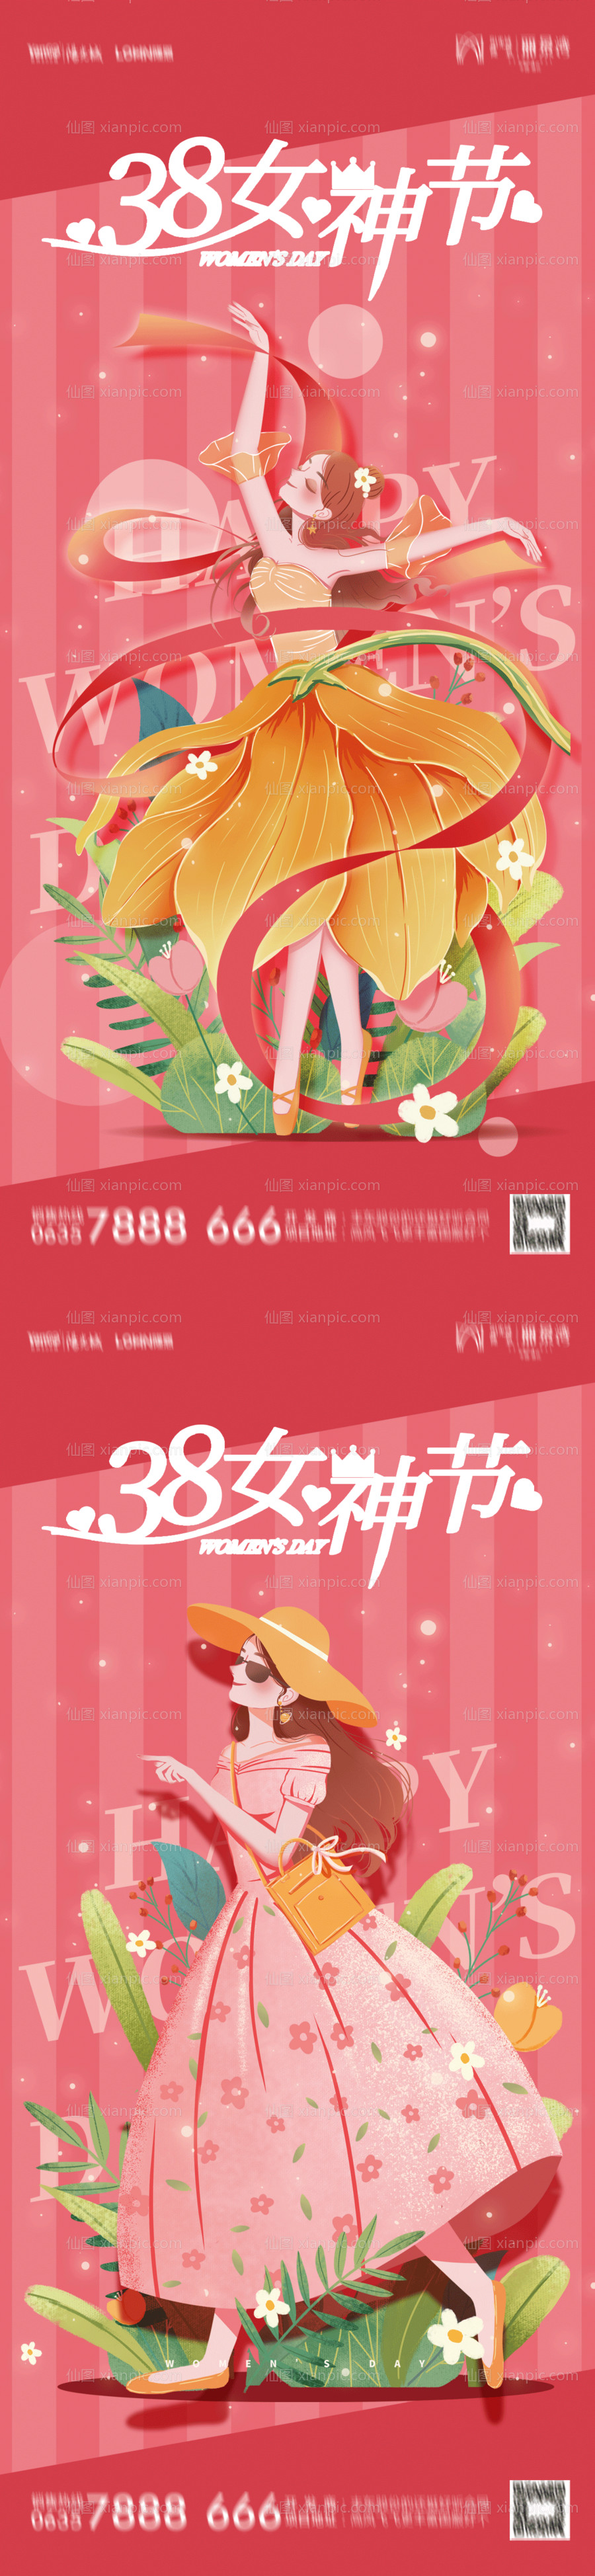 素材乐-38女神节妇女节系列海报